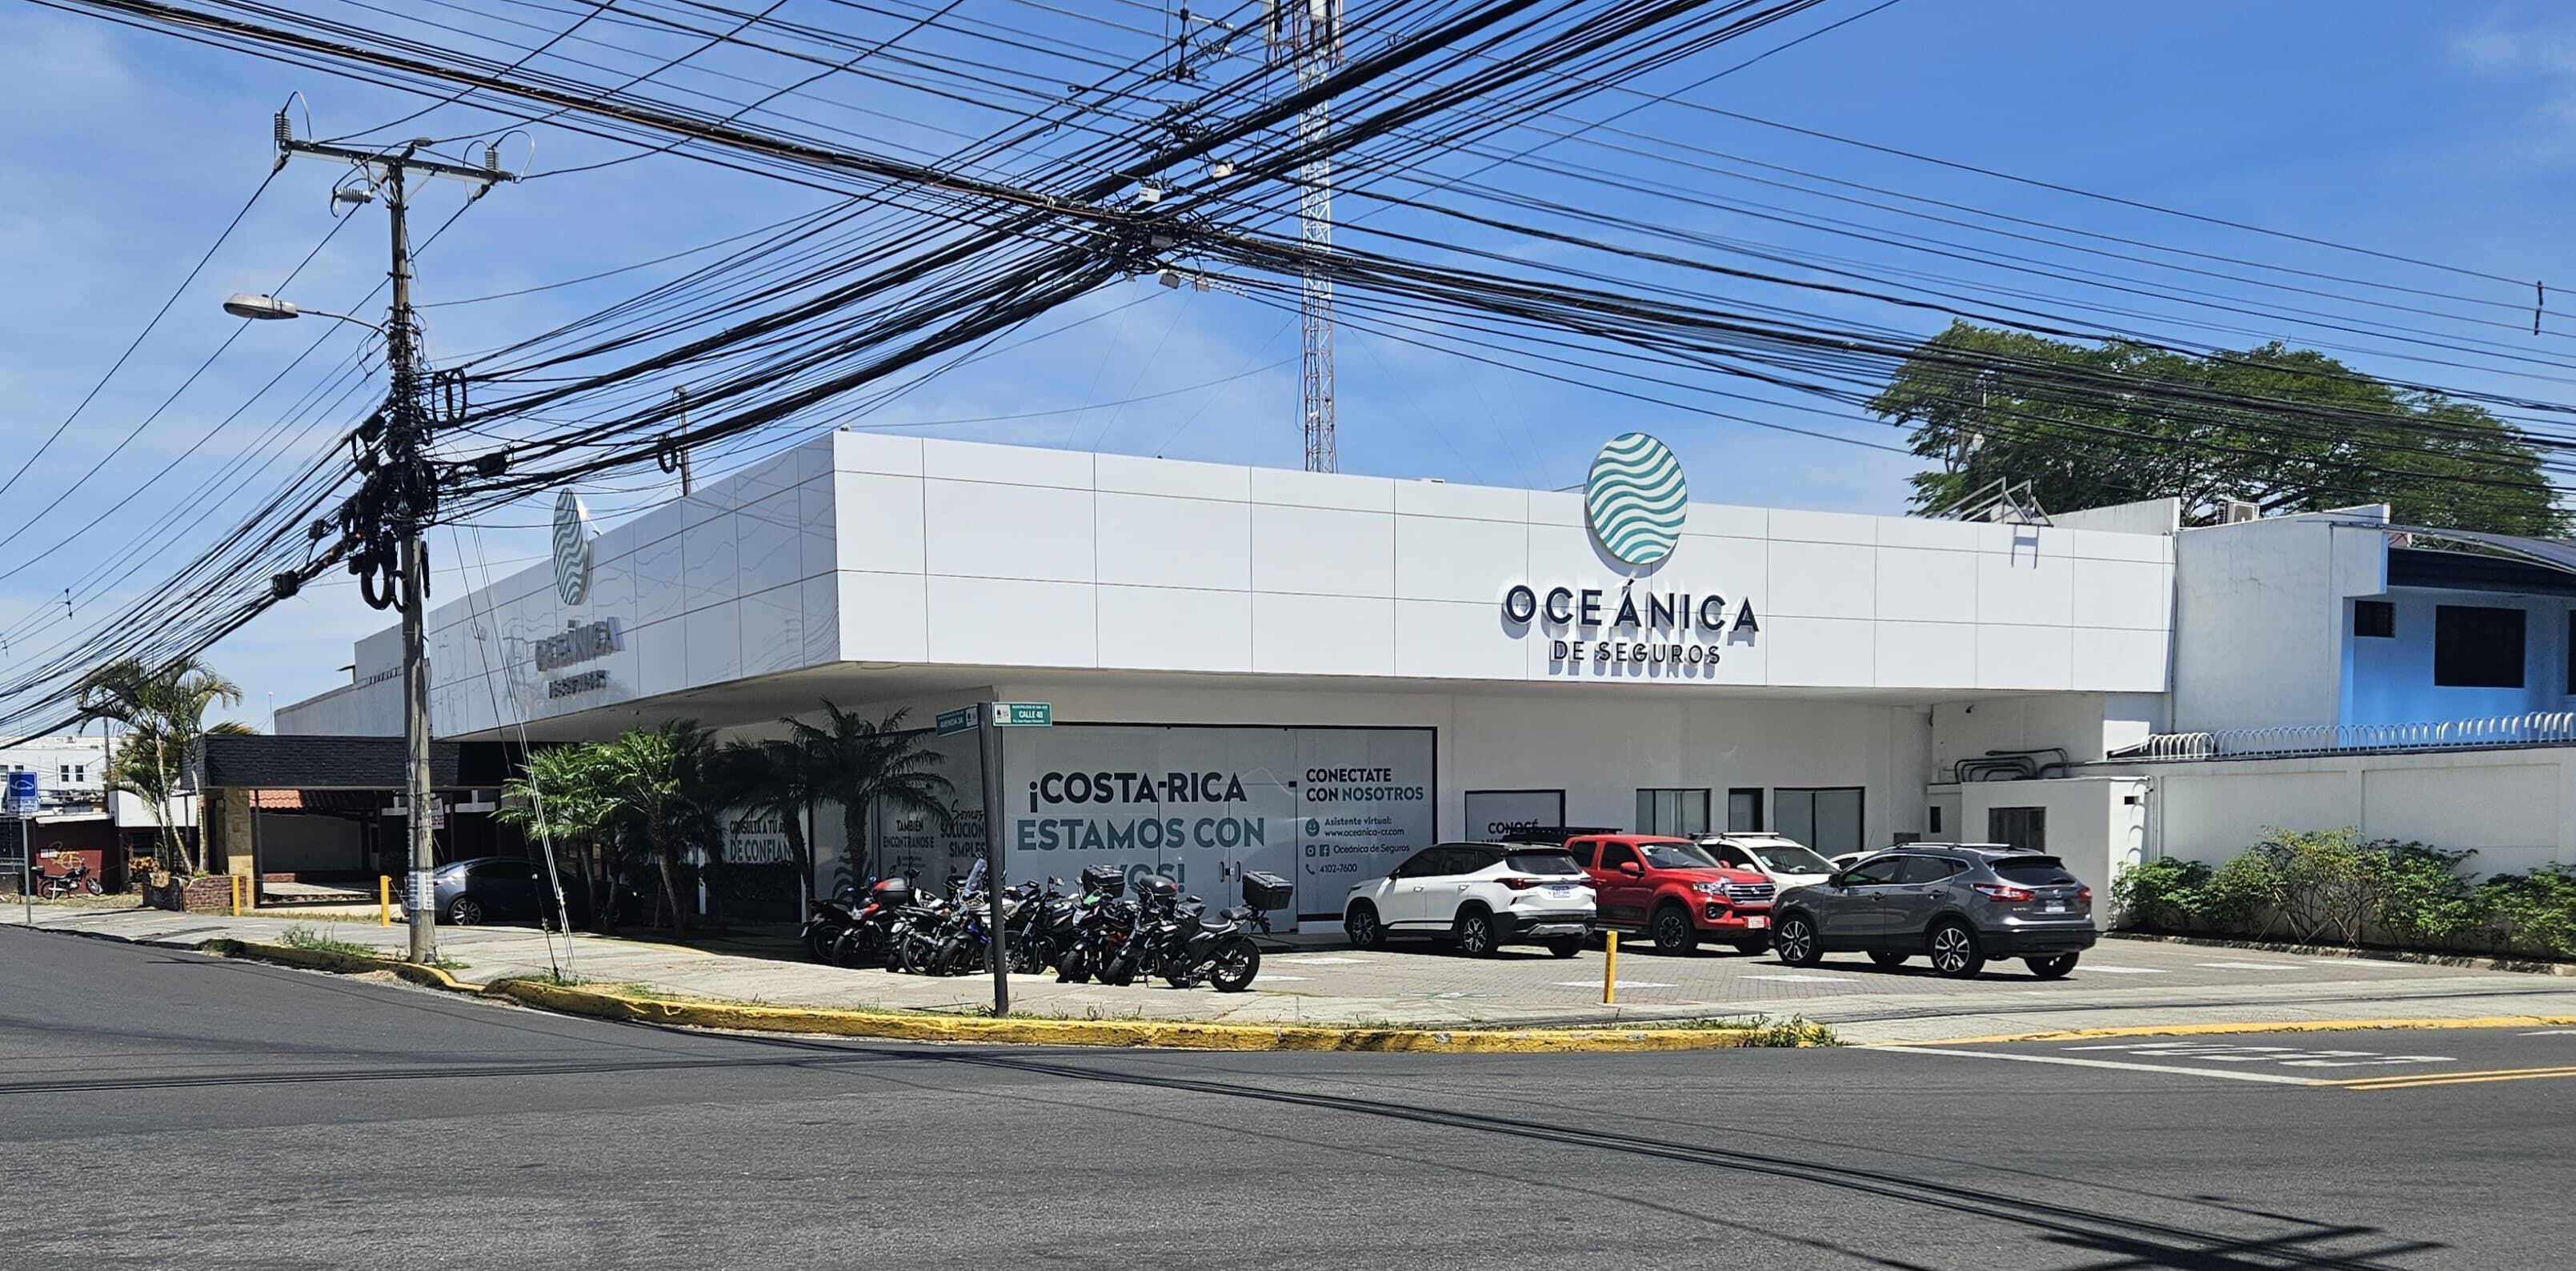 Oceánica de Seguros es una aseguradora que llegó a Costa Rica en el año 2013. 